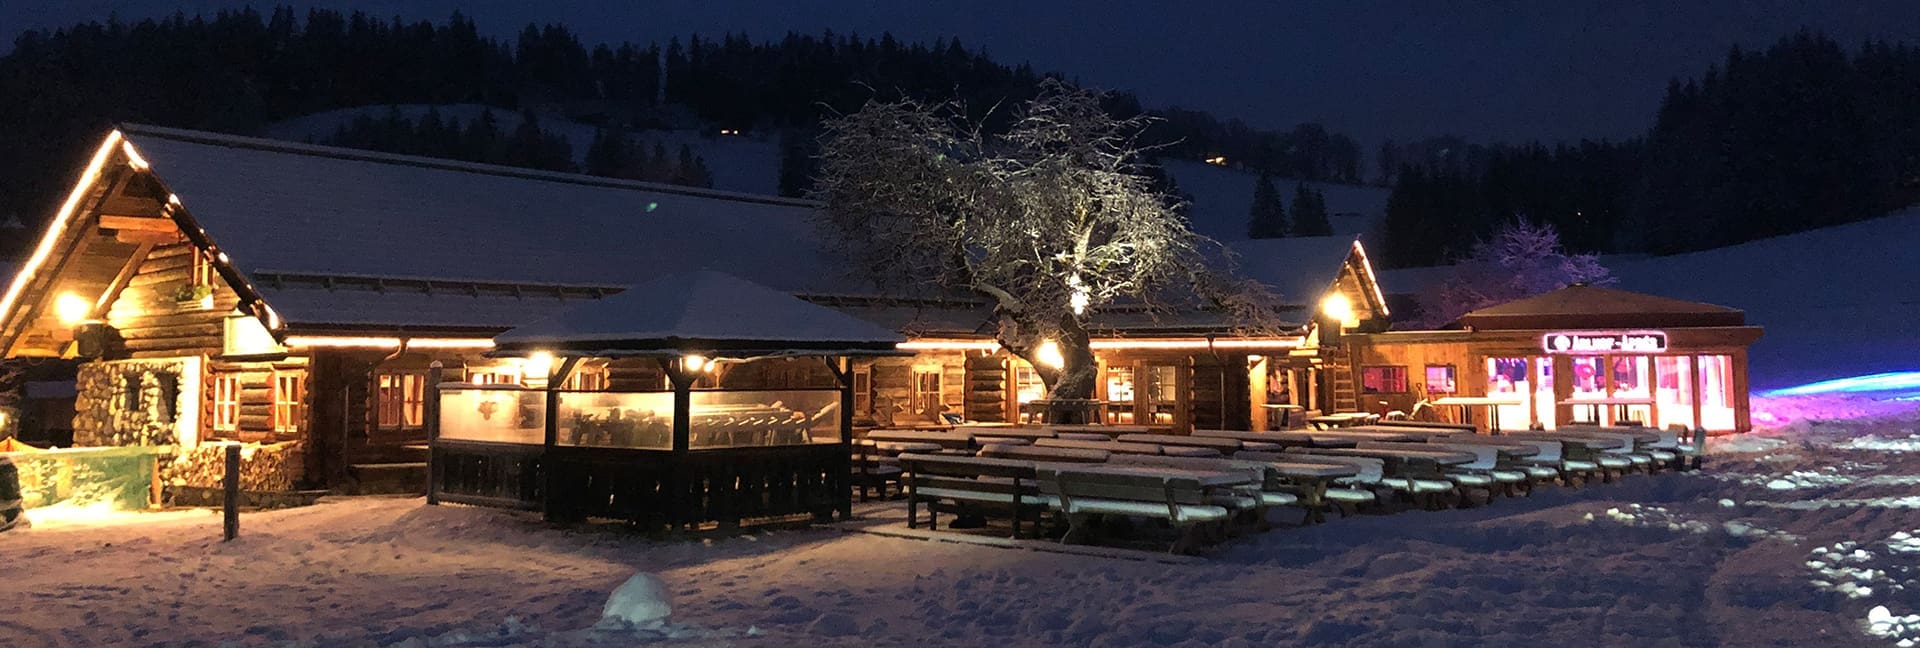 Die Arlhofhütte - Restaurant, Bar, Après-Ski, Hut-Restaurant - direkt an der Skistation Hochbifang, Altenmarkt